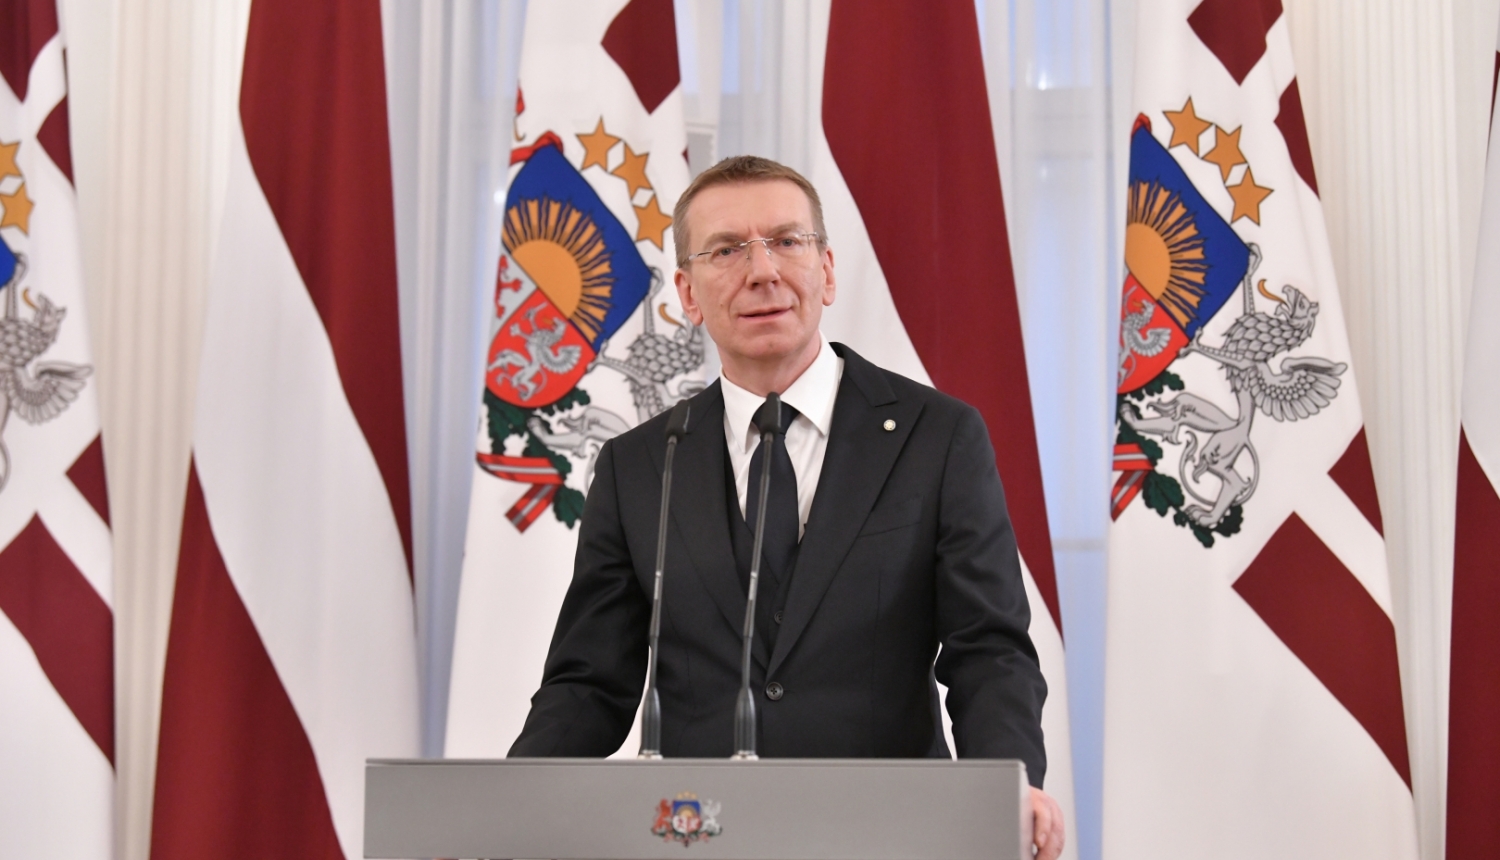 Valsts prezidenta Edgara Rinkēviča uzruna augstāko Latvijas valsts apbalvojumu – Triju Zvaigžņu ordeņa, Viestura ordeņa un Atzinības krusta – pasniegšanas svinīgajā ceremonijā